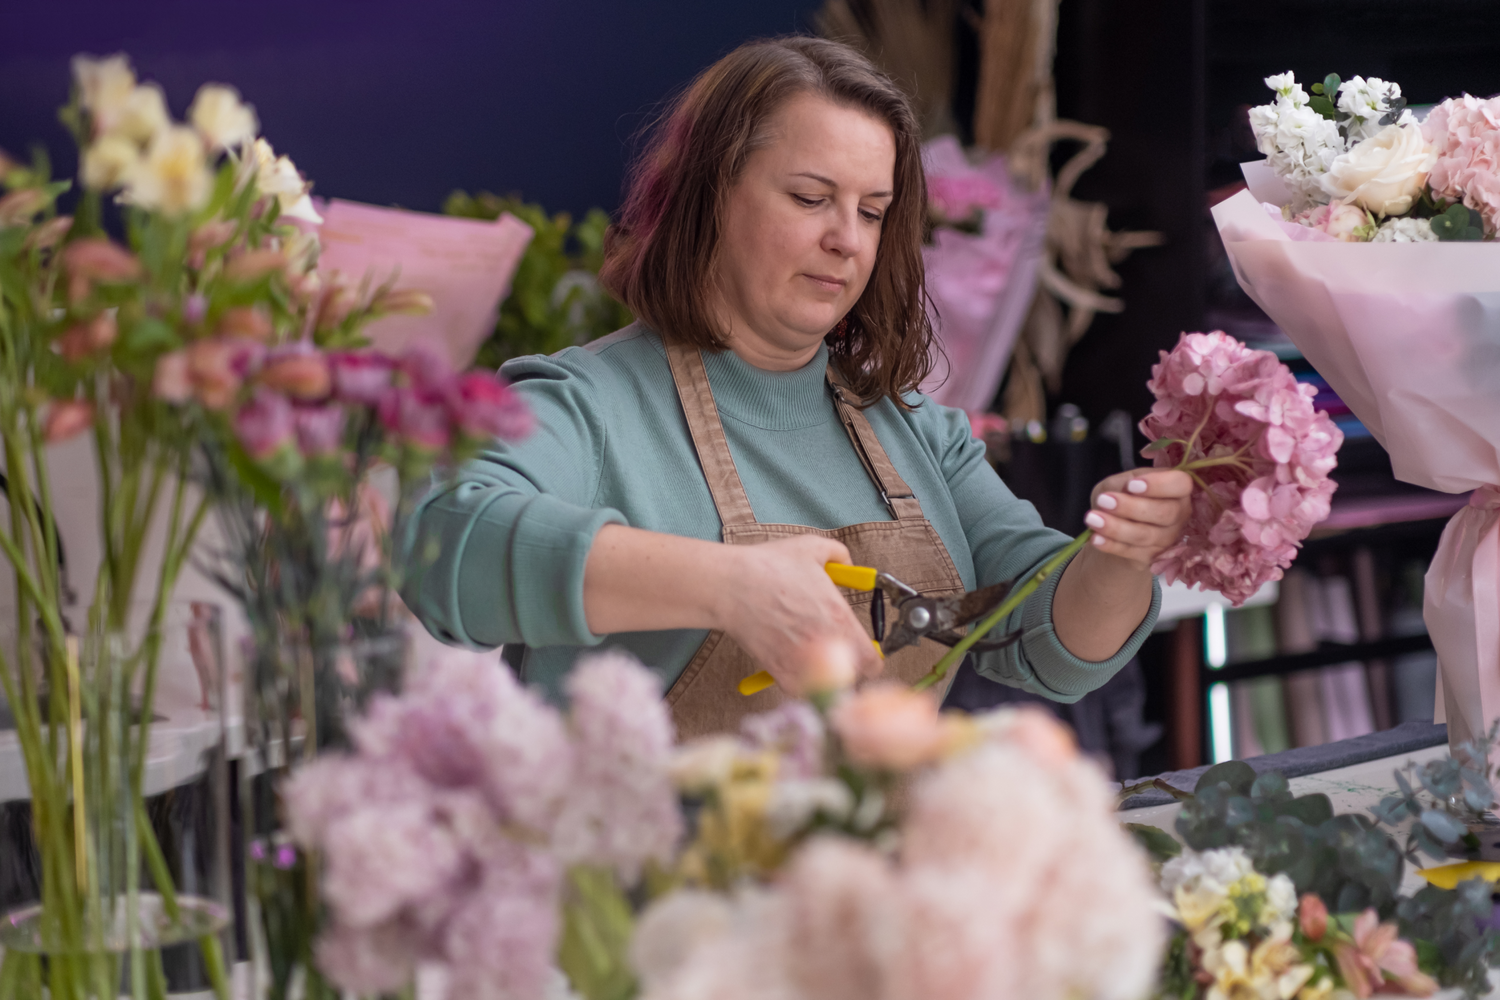 En kvinne klipper blomster i en blomsterbutikk.